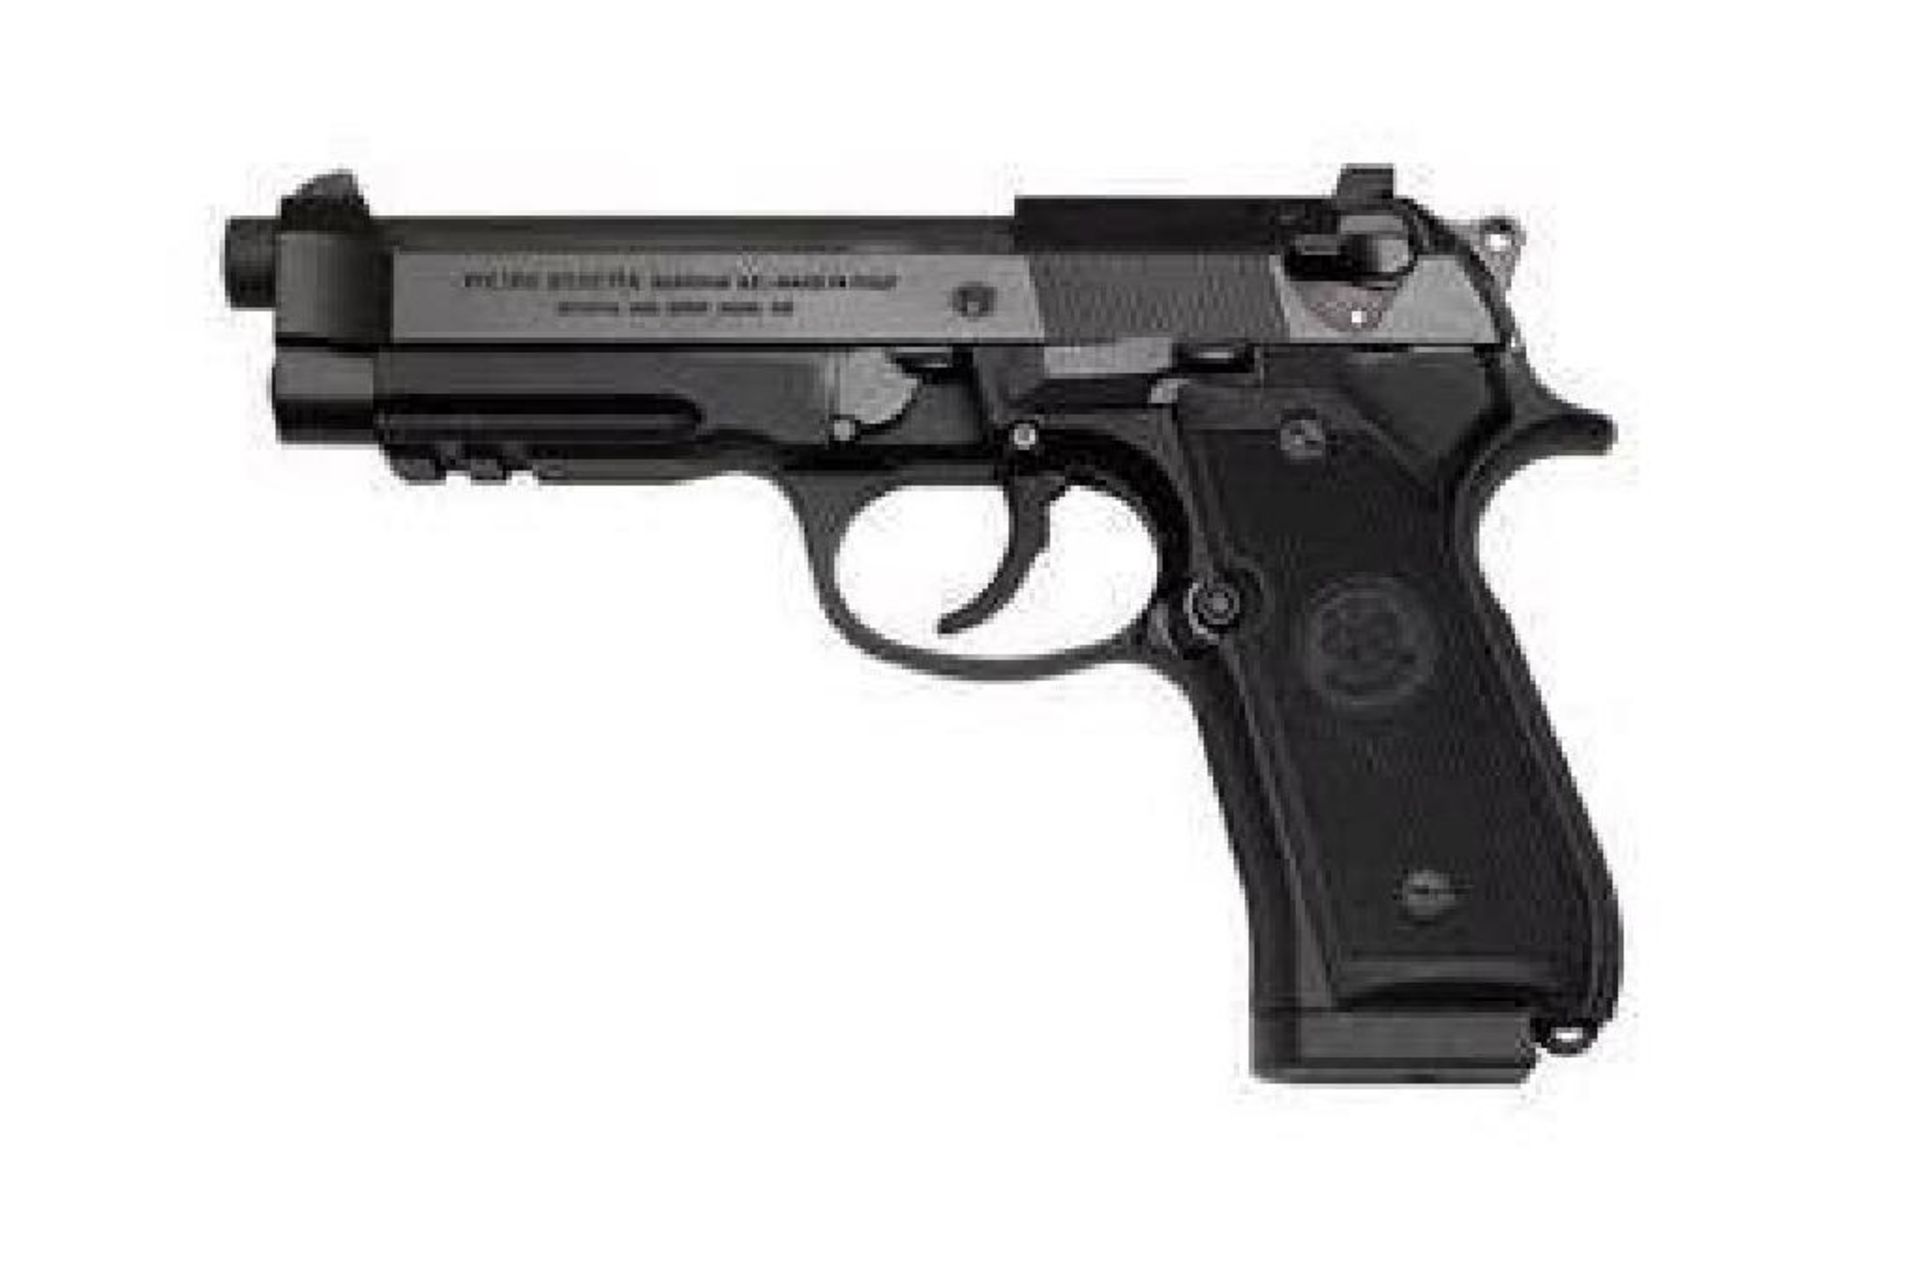 FAMILY:92 Pistol Series  MODEL:92A1  TYPE:Semi-Auto Pistol  ACTION:Double / Single Action  FINISH: